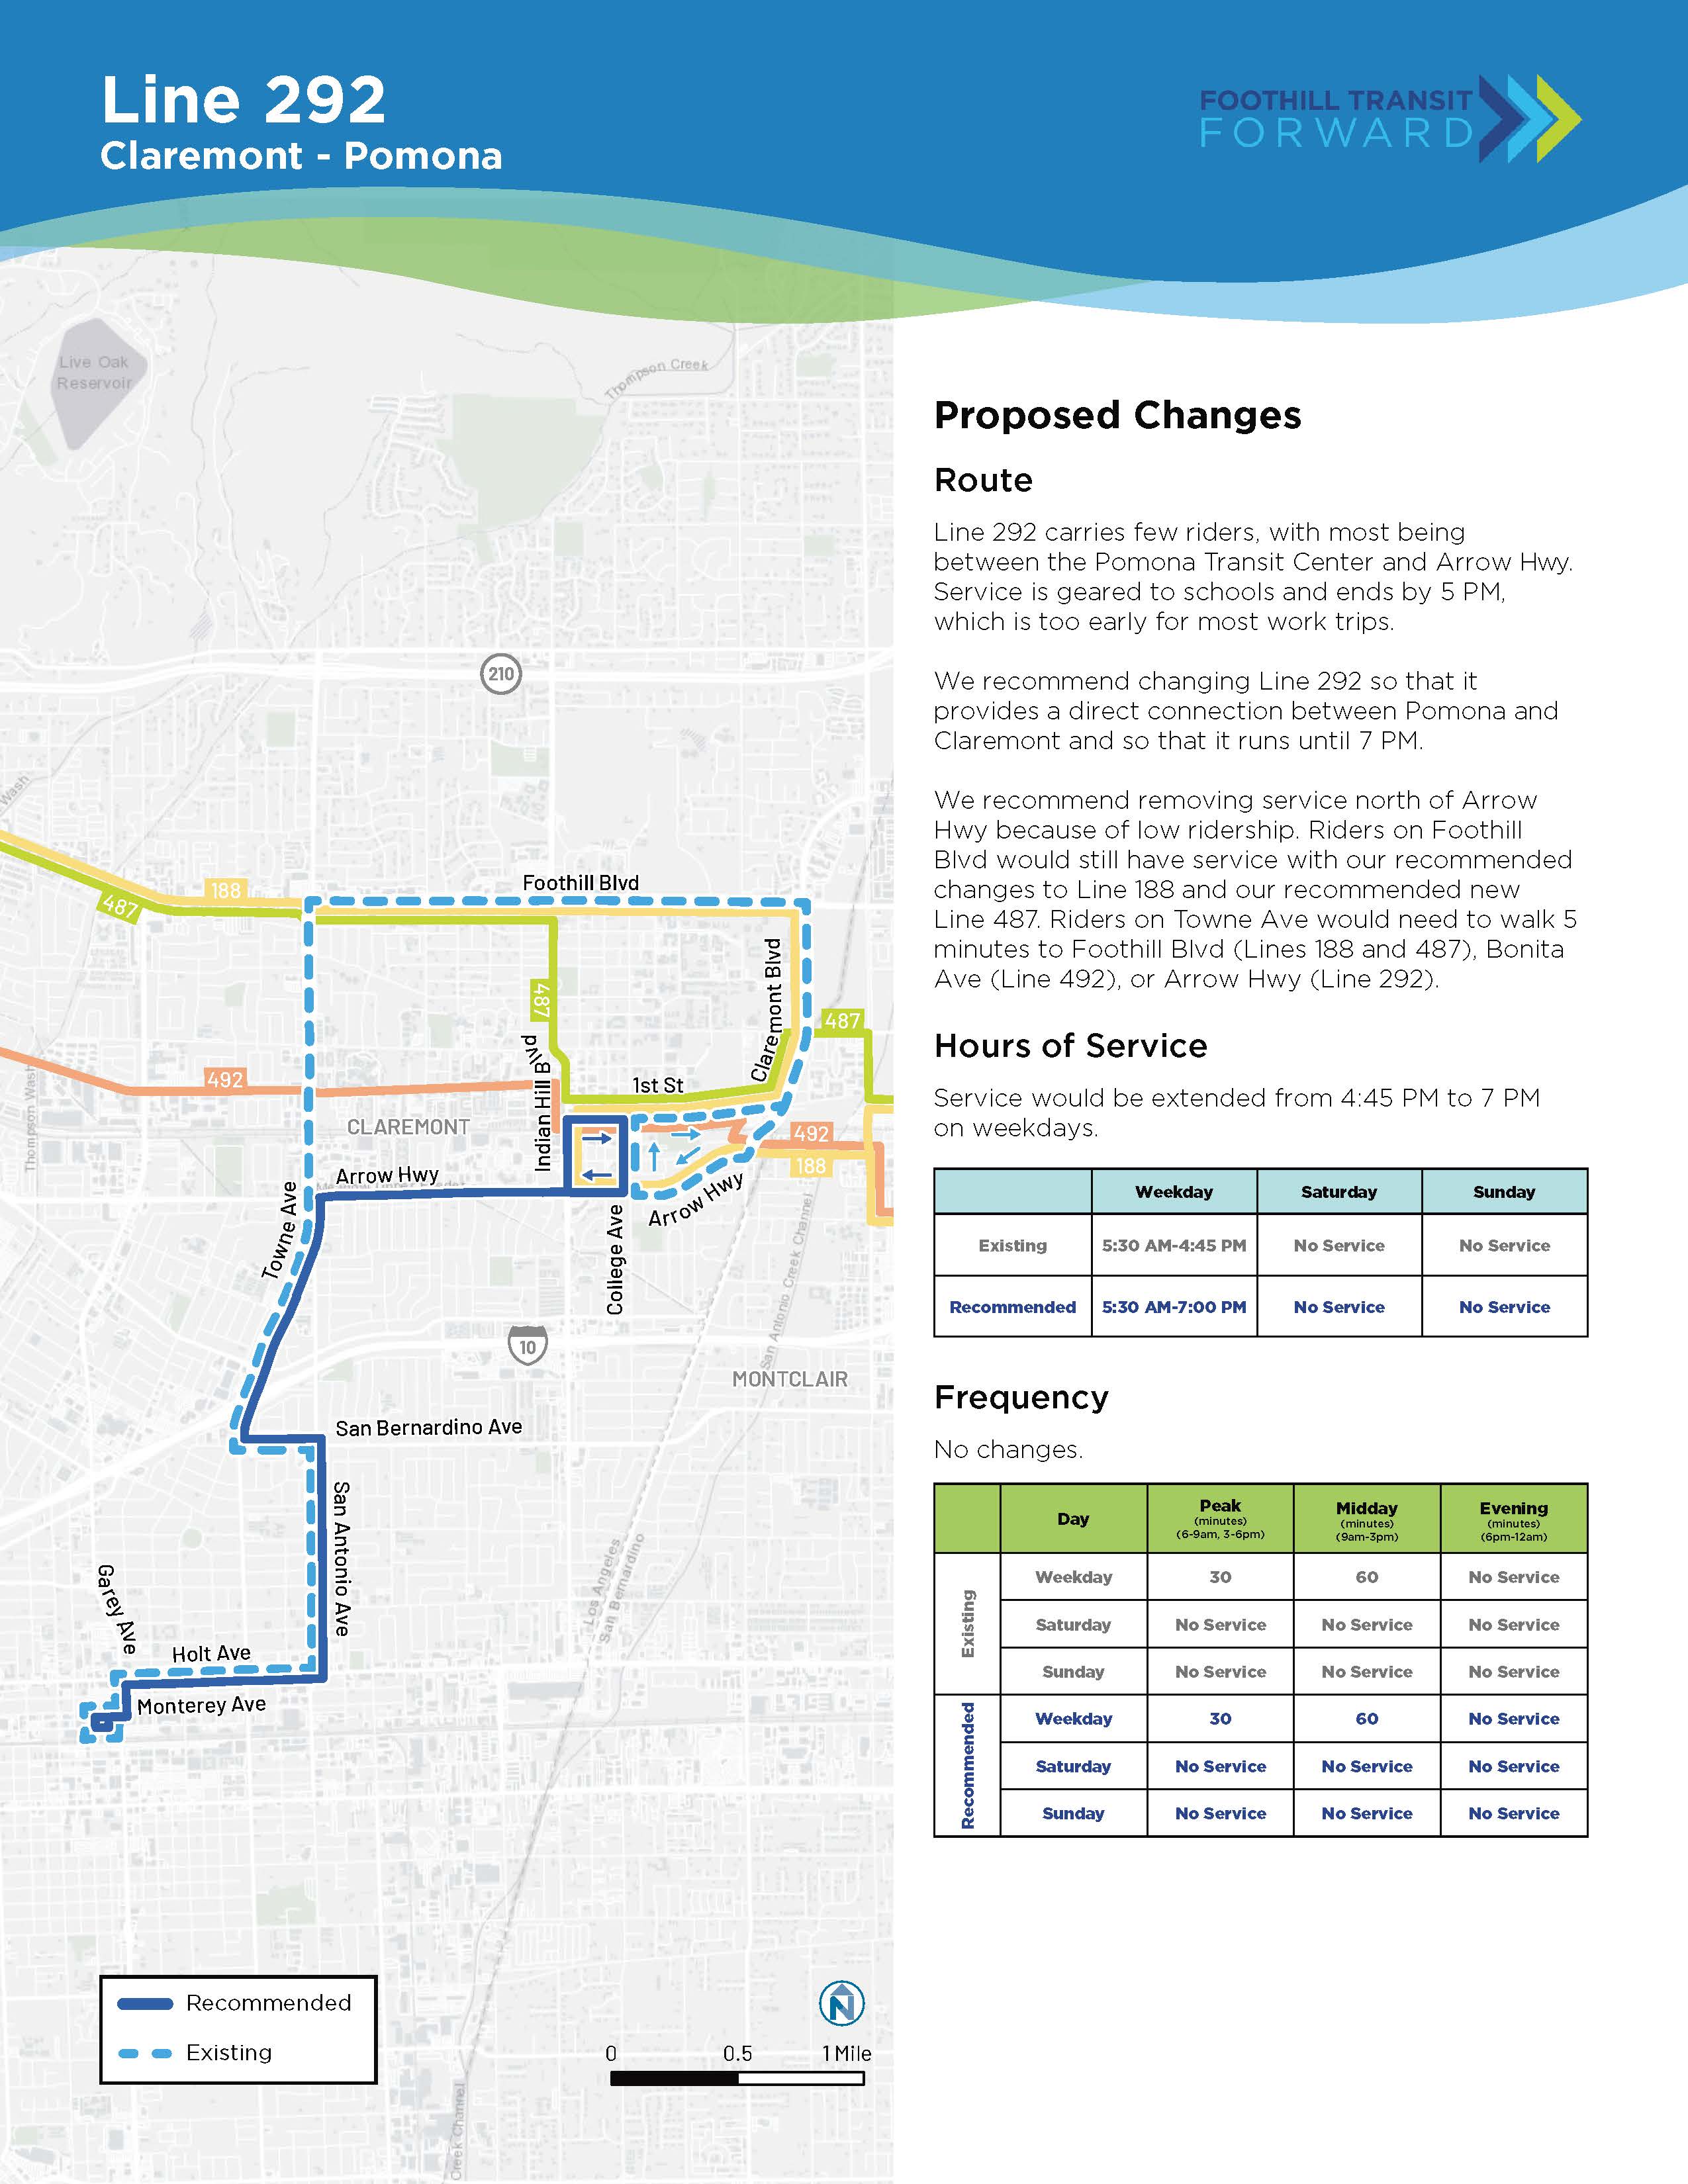 提议的更改：大多数 292 号线的乘客都在 Pomona Transit Center 和 Arrow Hwy 之间行驶。 服务于下午 5 点结束。 我们建议更改 292 号线以提供 Pomona 和 Claremont 之间的直接连接，并一直运行到晚上 7 点。 我们建议取消 Arrow Hwy 以北的服务，以减少客流量。 Foothill Blvd 上的乘客可以使用我们建议的 188 号线和我们推荐的 487 号线的更改。Towne 上的乘客需要步行 5 分钟才能到达 Foothill、Bonita 或 Arrow。 频率：无变化。